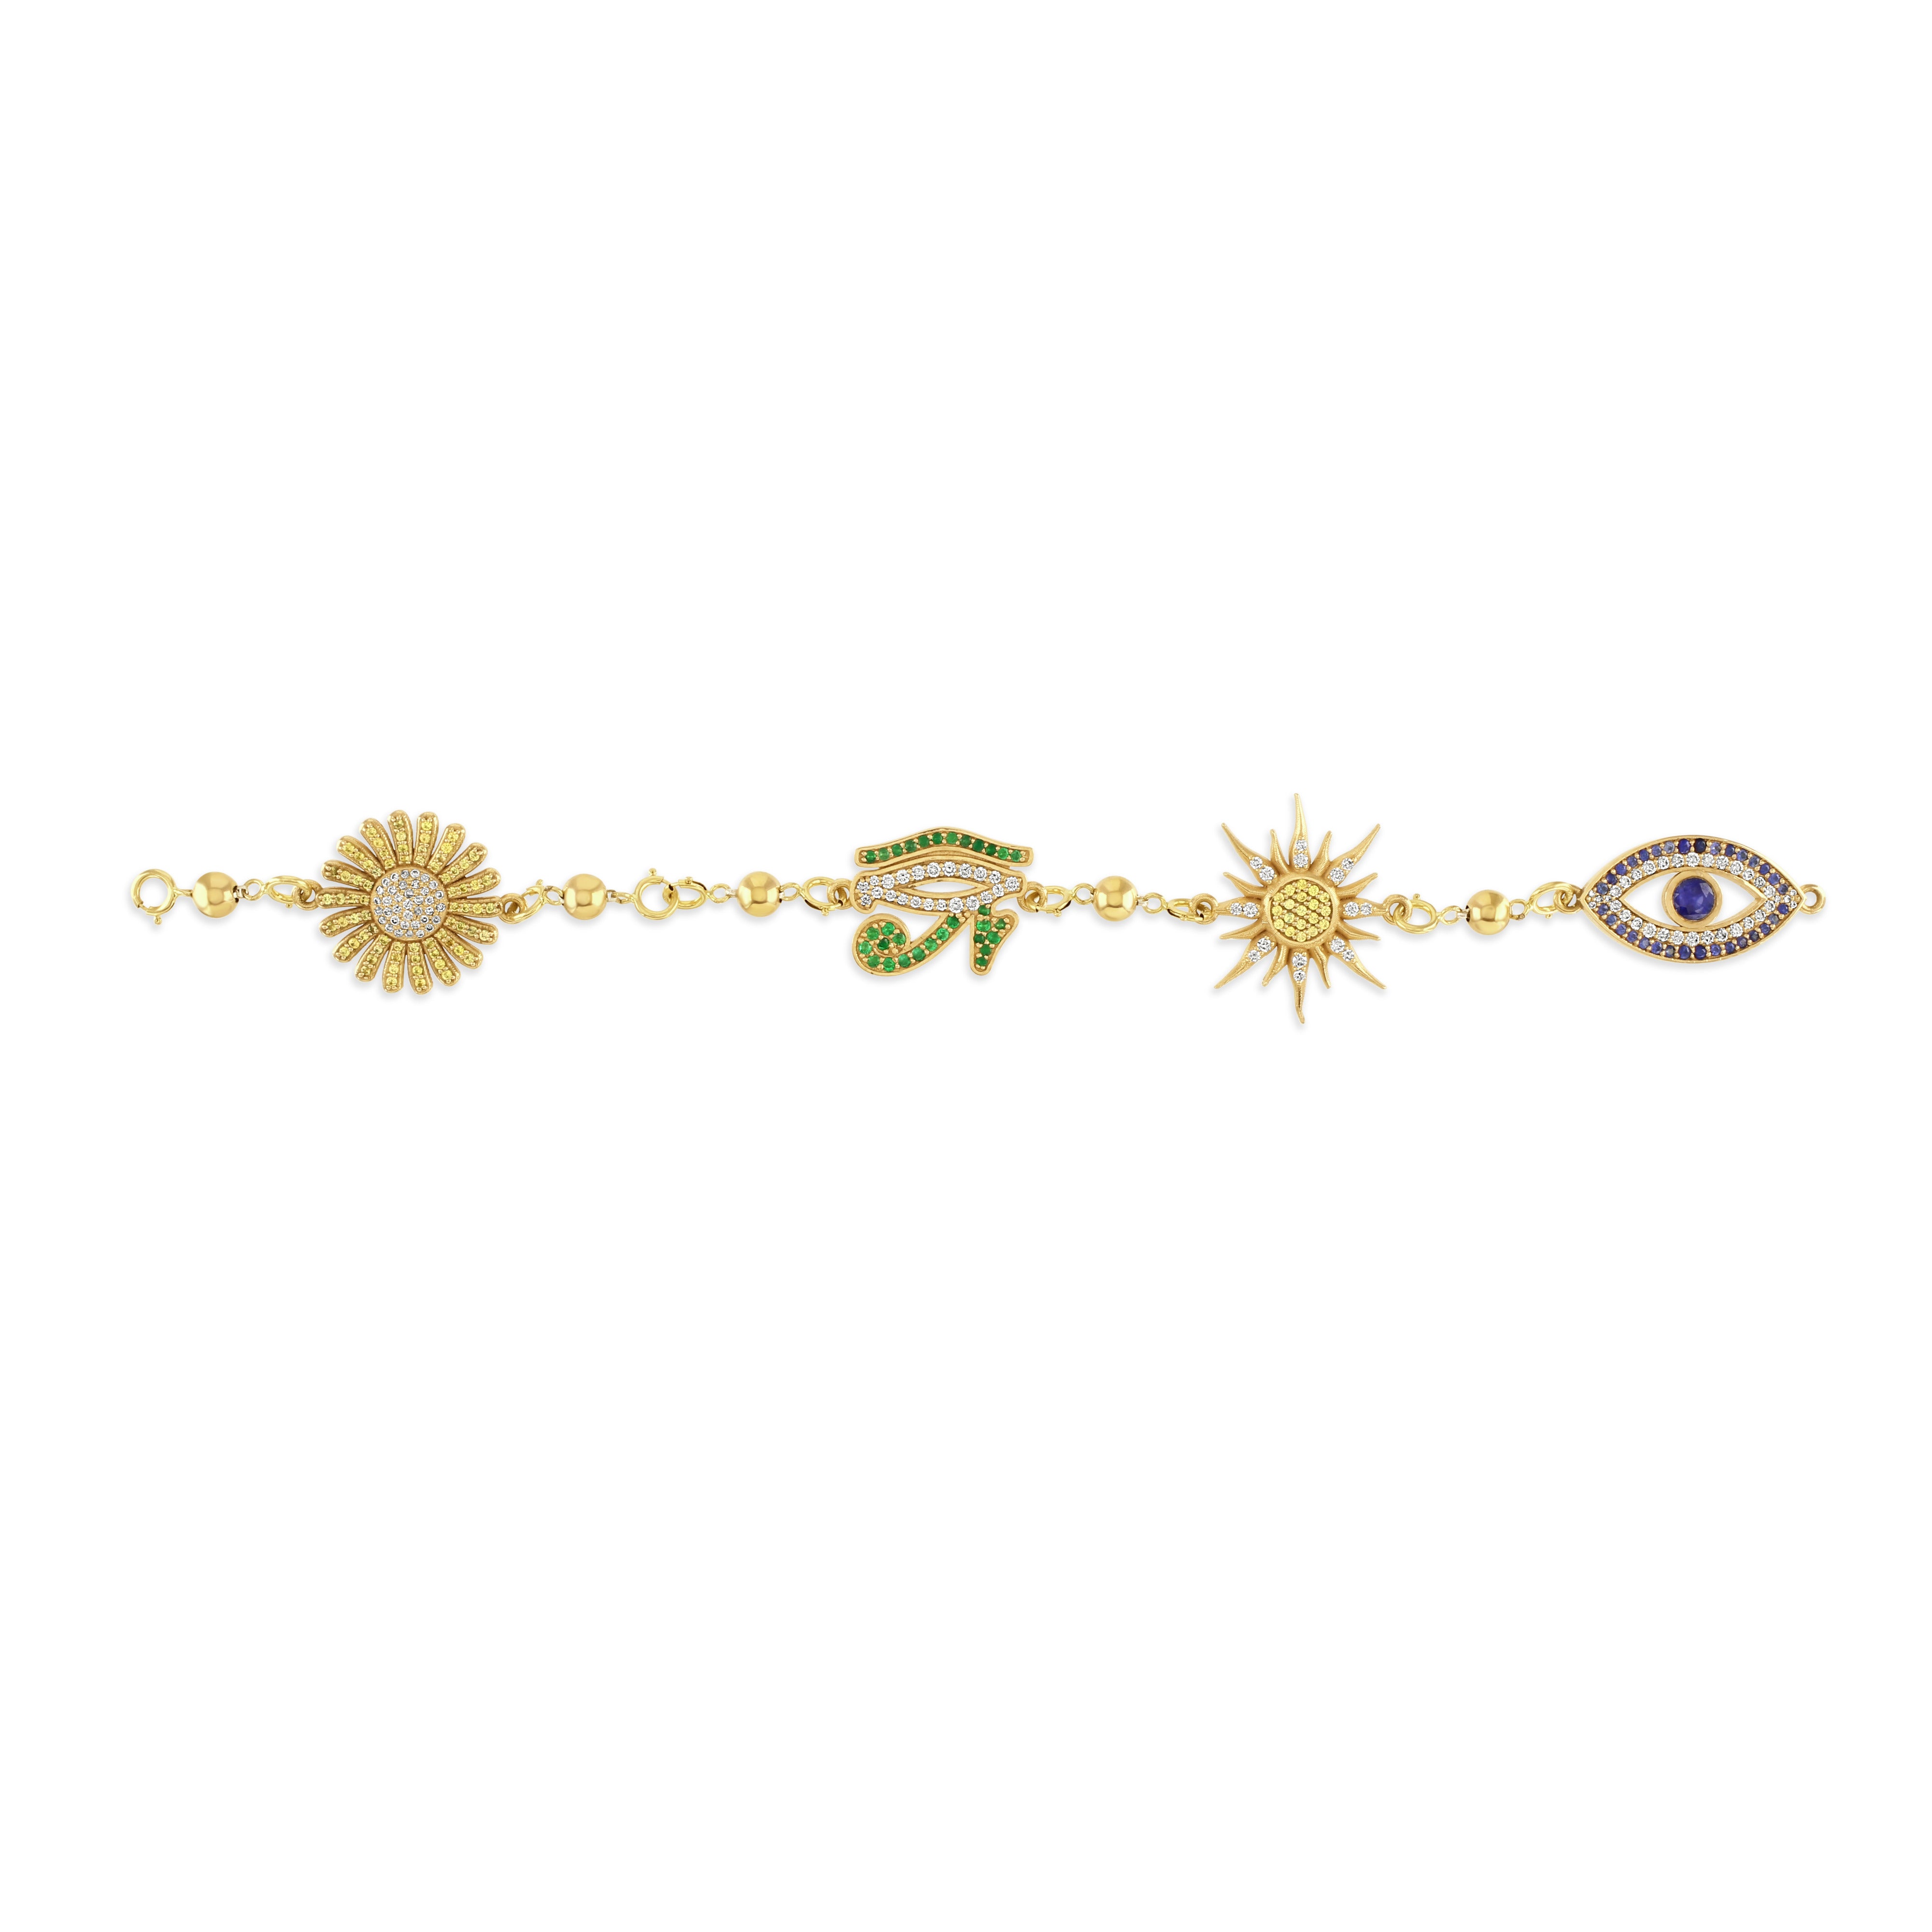 18ct gold Multi-Energy charm bracelet